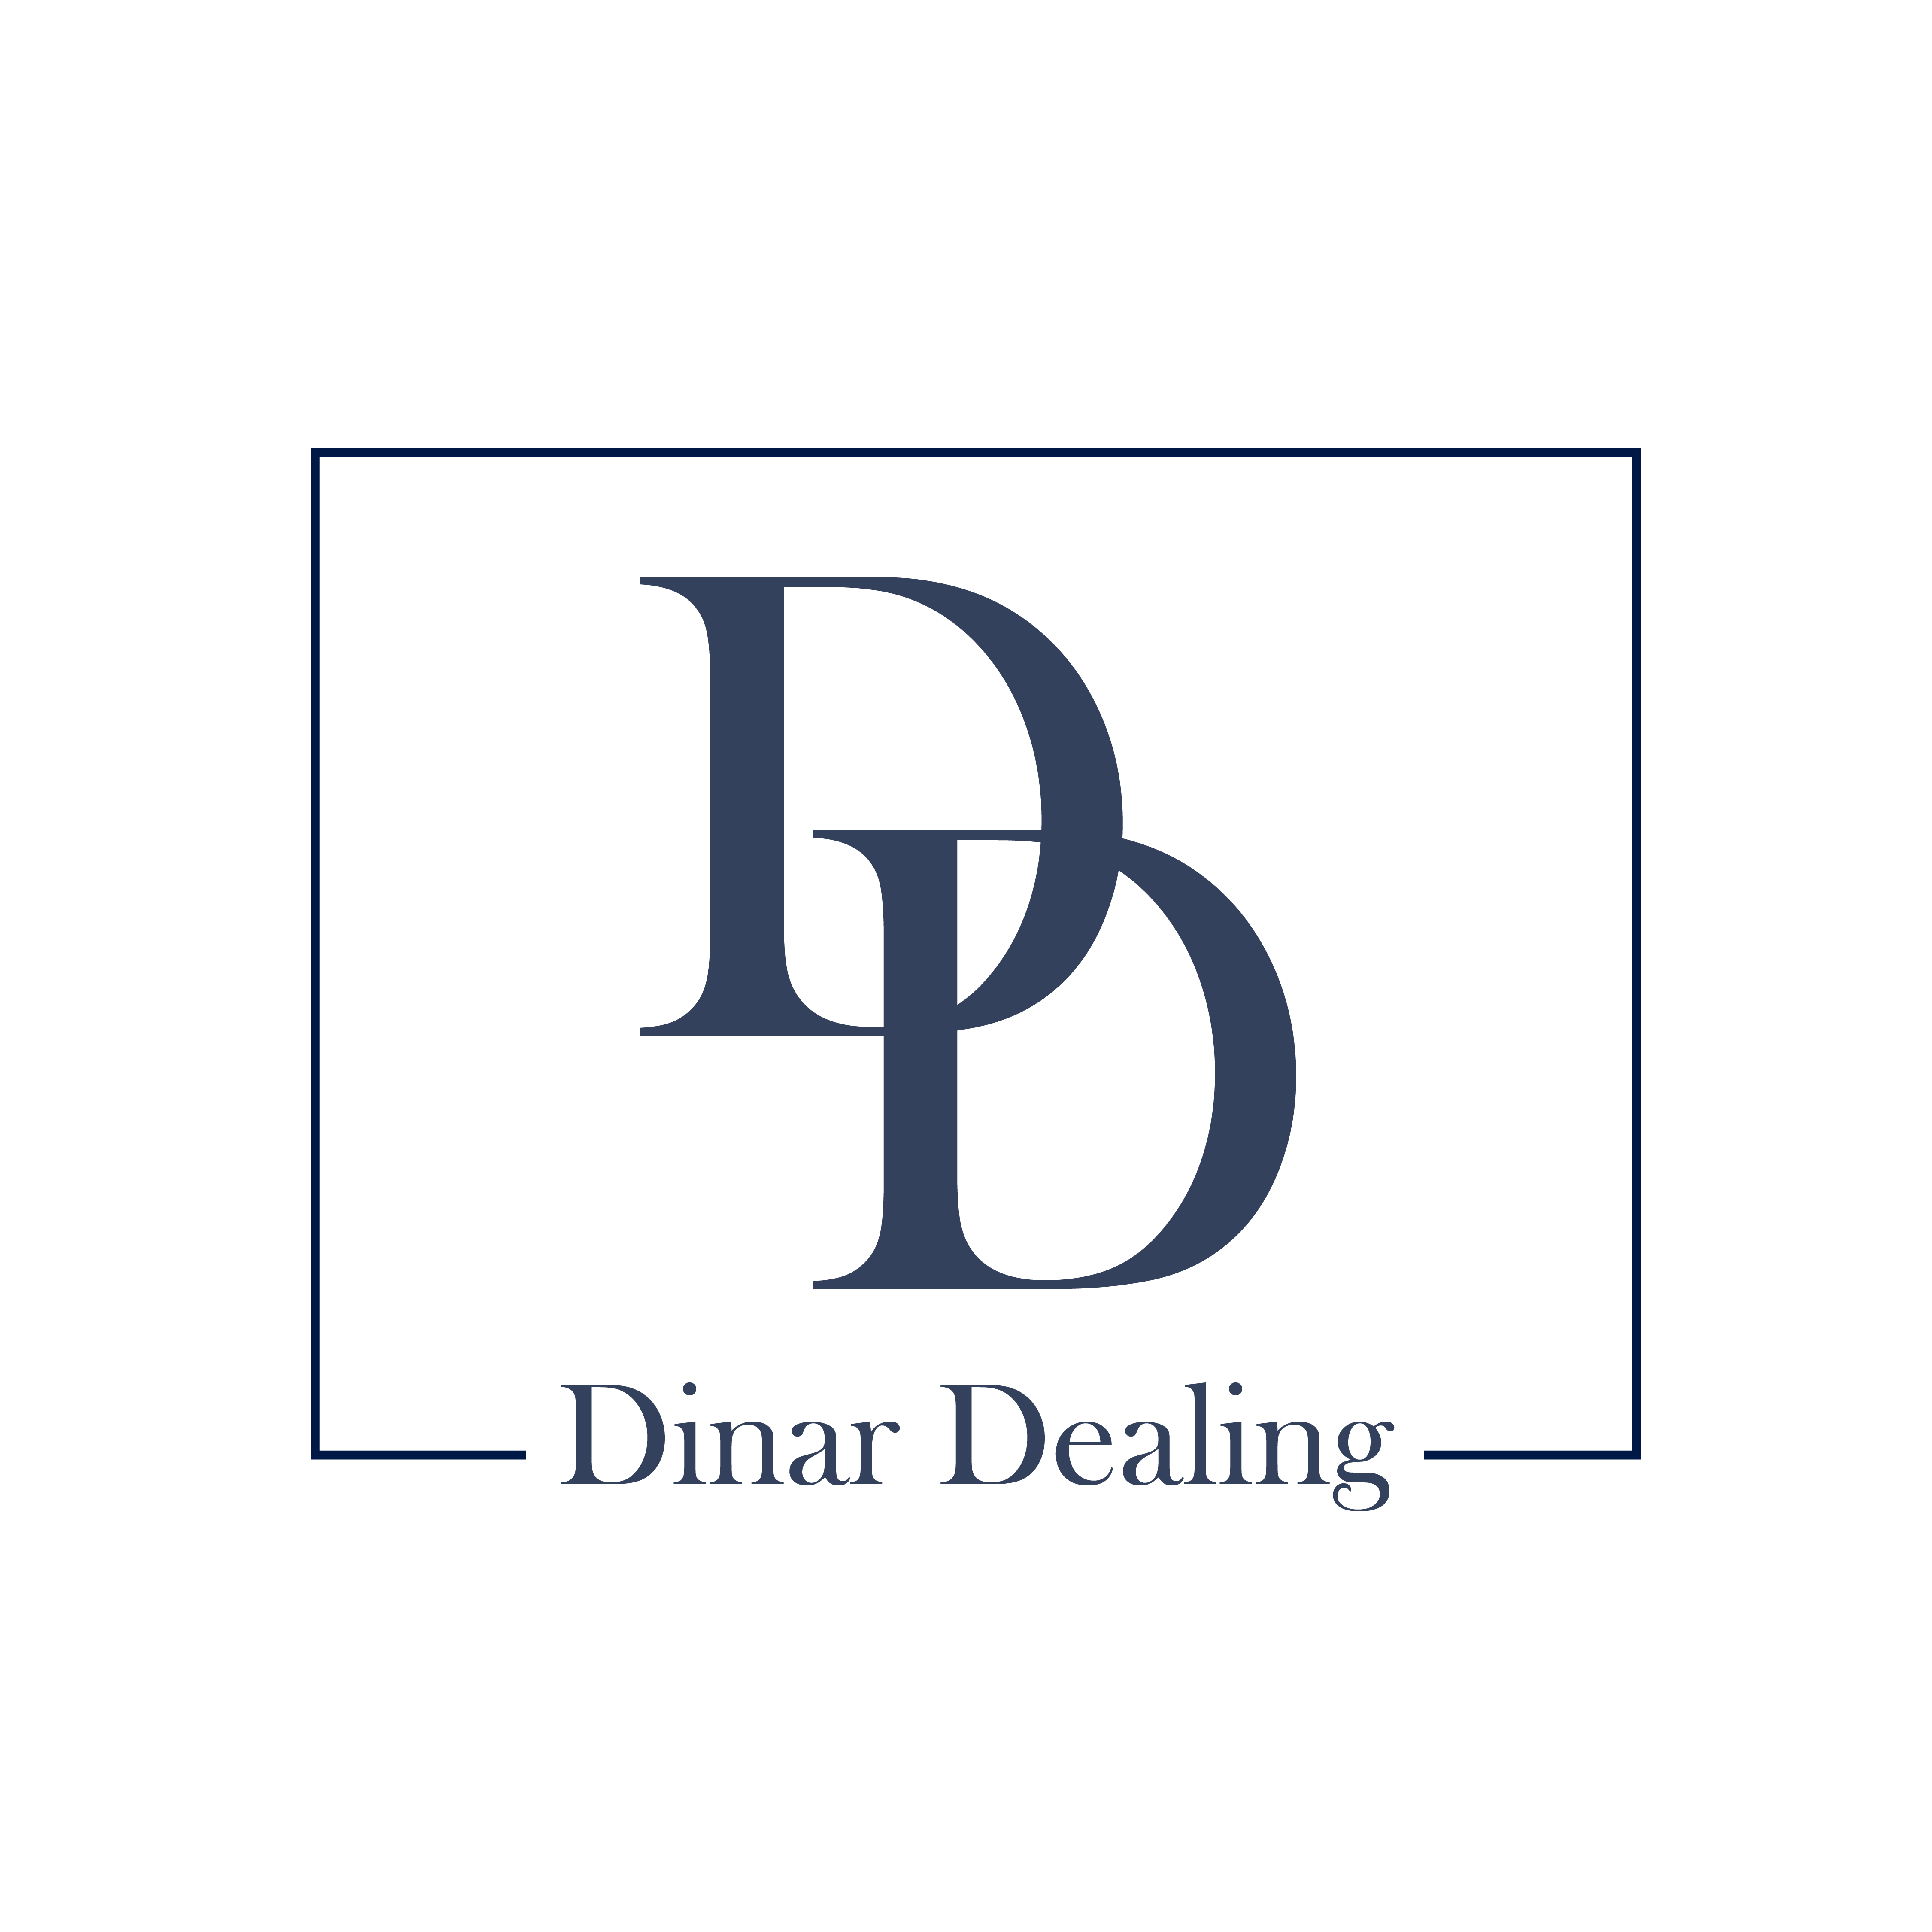 Buy Inari Dinar Online - Dinar De